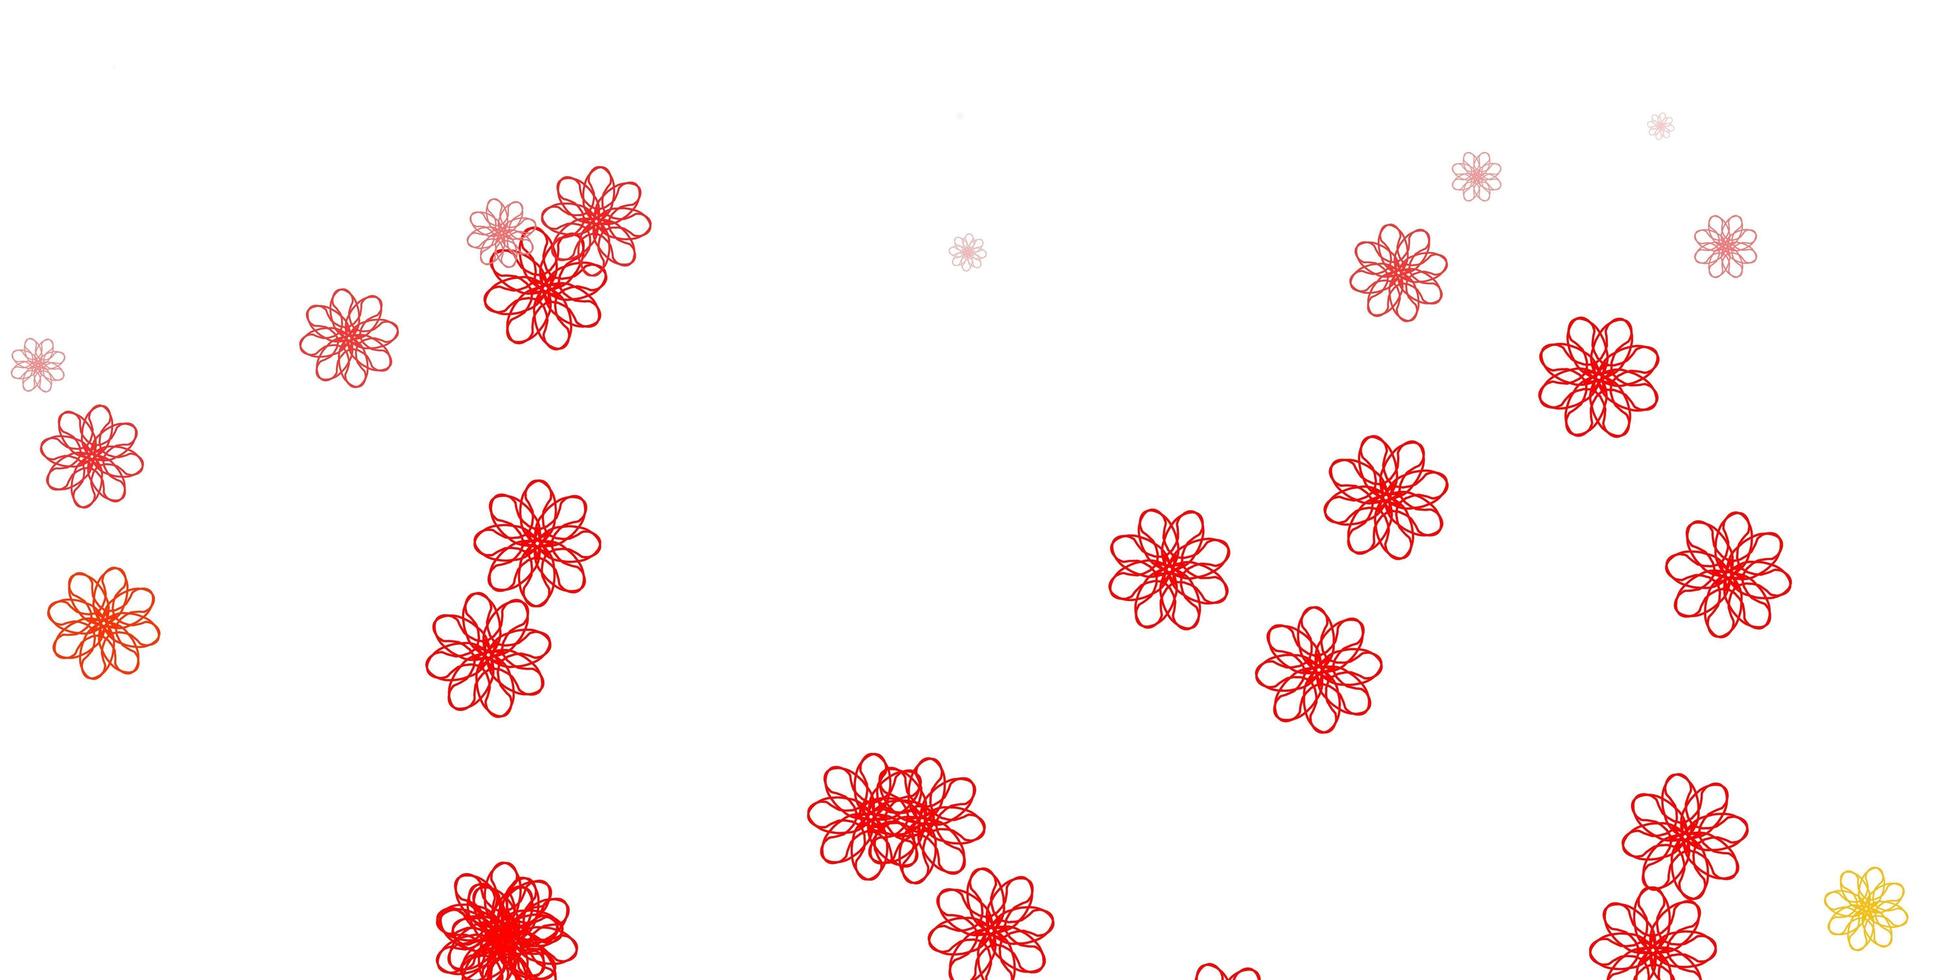 ilustraciones naturales de vector rojo claro con flores.